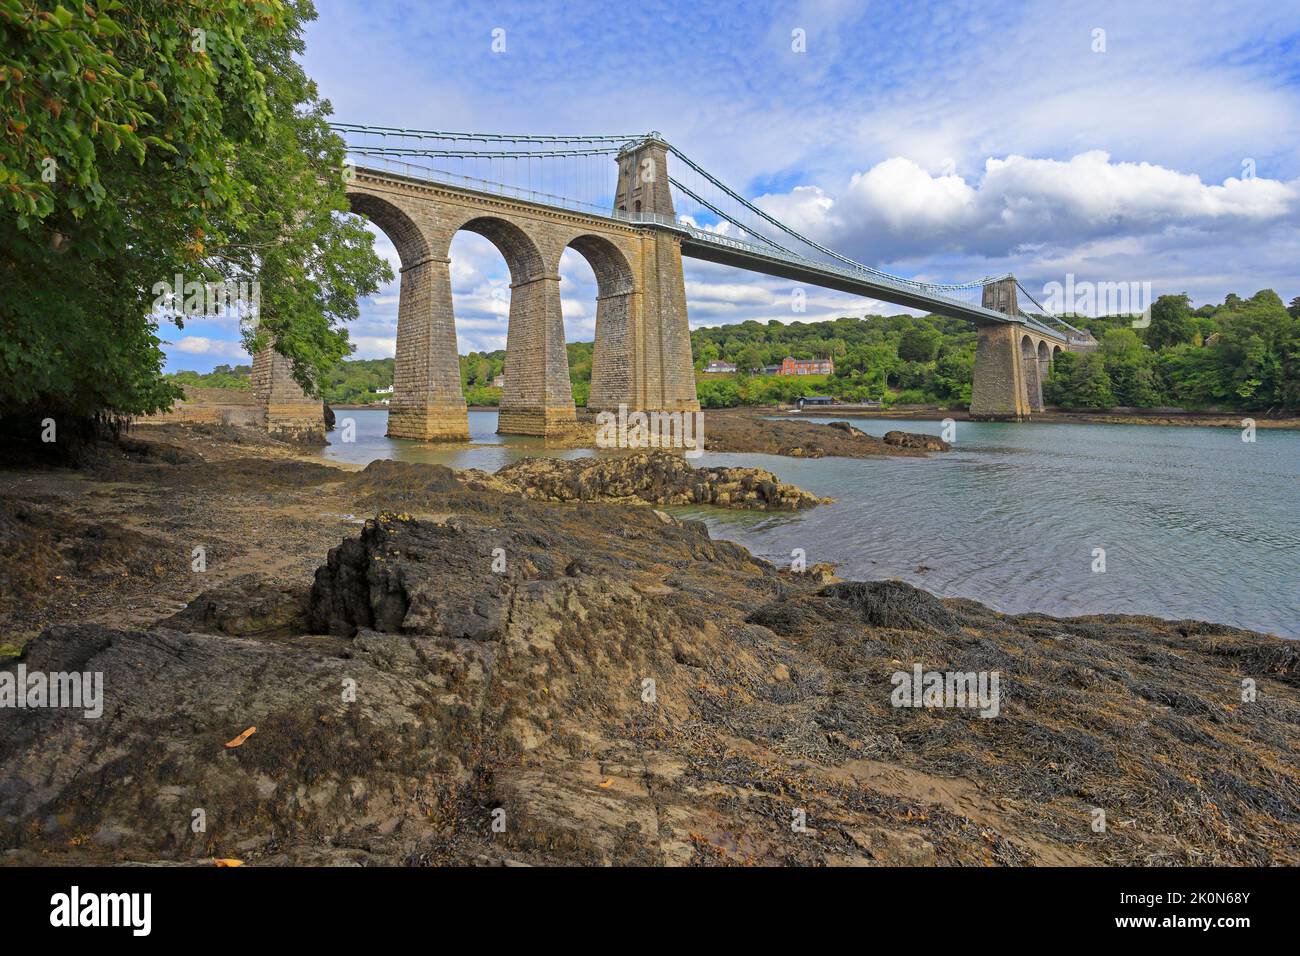 Ponte sospeso Menai di Thomas Telford, Pont Menai, dallo stretto di Menai, dal Ponte Menai, dall'Isola di Anglesey, da Ynys Mon, Galles del Nord, REGNO UNITO. Foto Stock